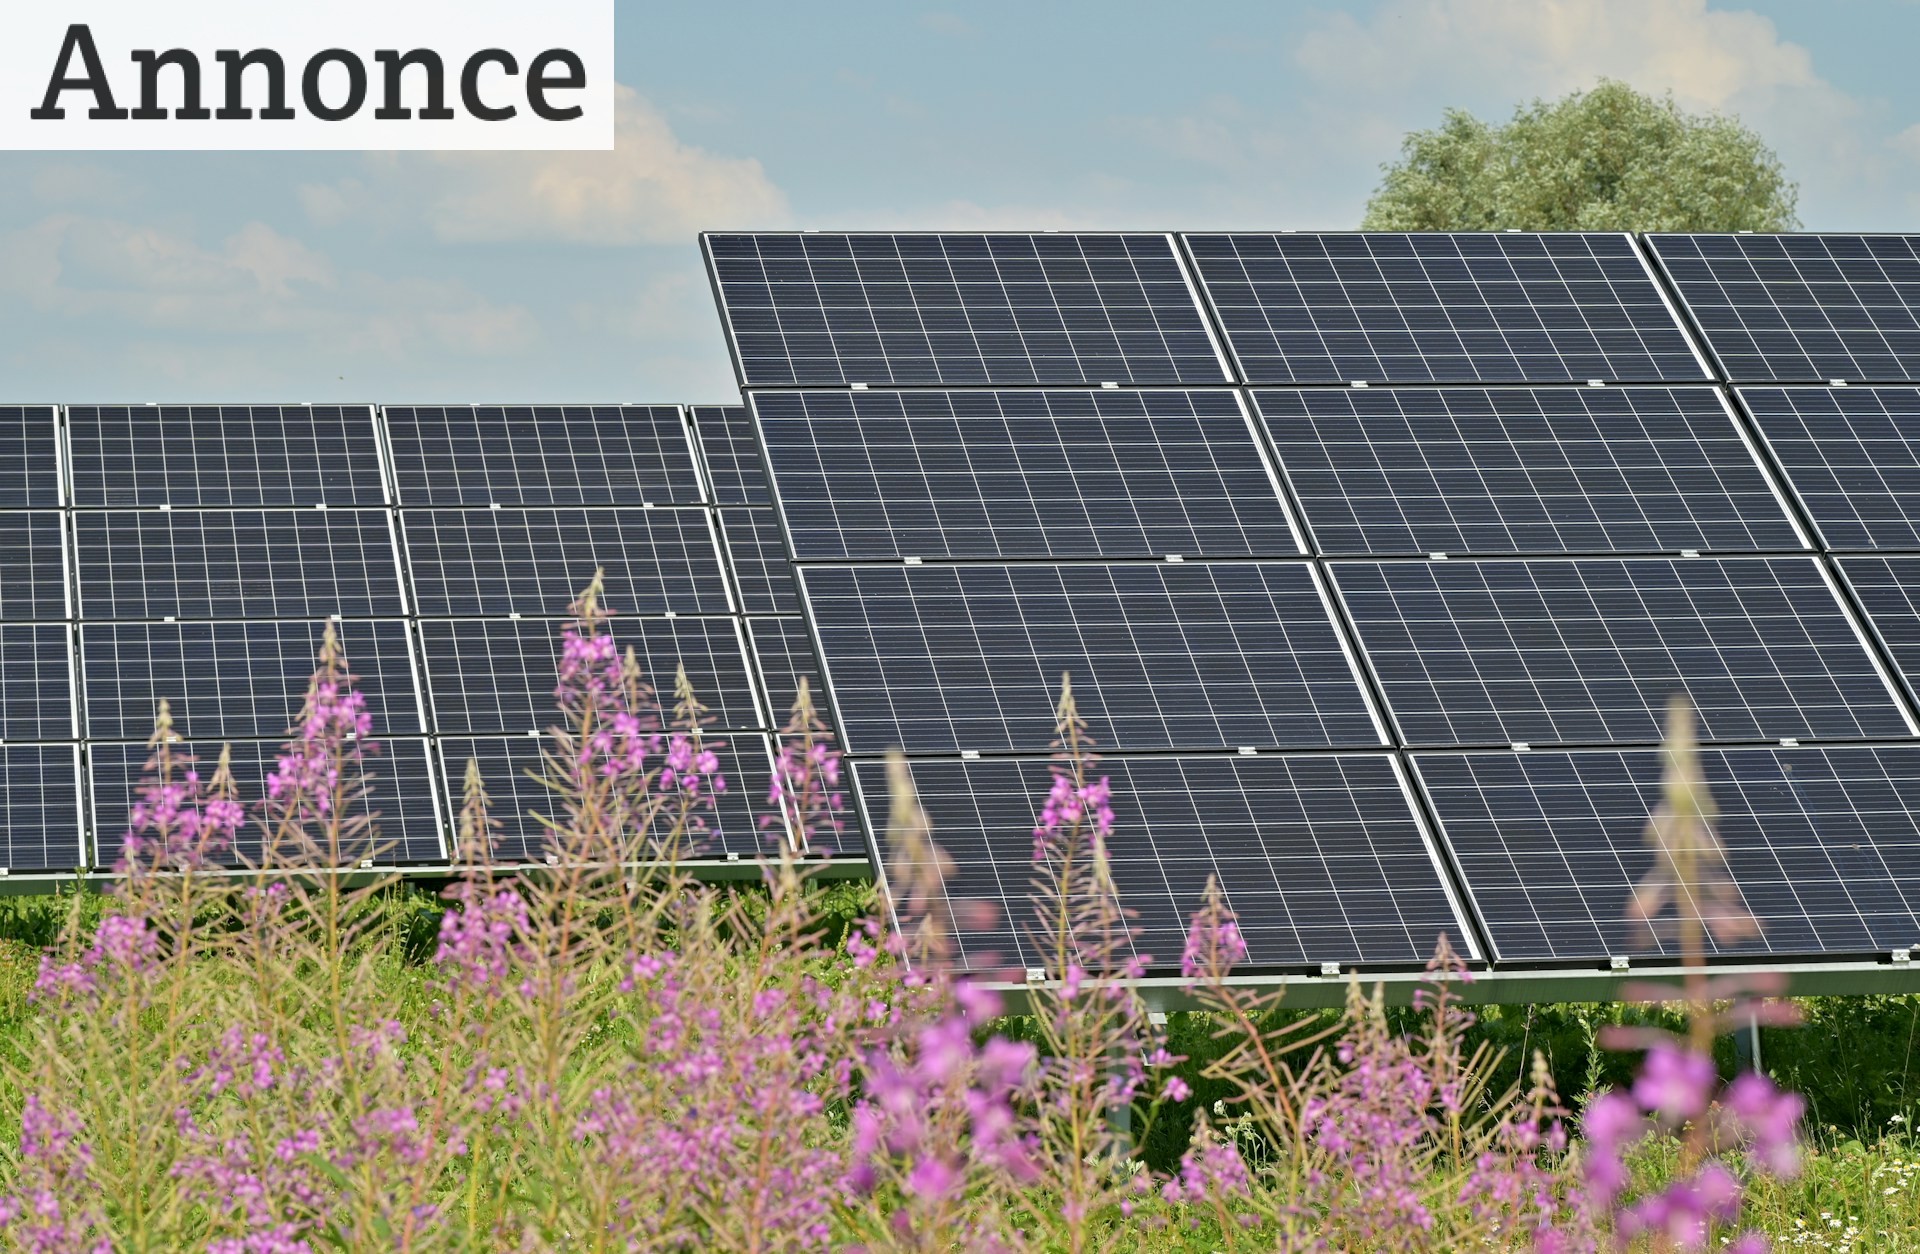 Fremtiden er Elektrisk: Markedsfør Din Virksomhed med Solceller og Elbil Ladere